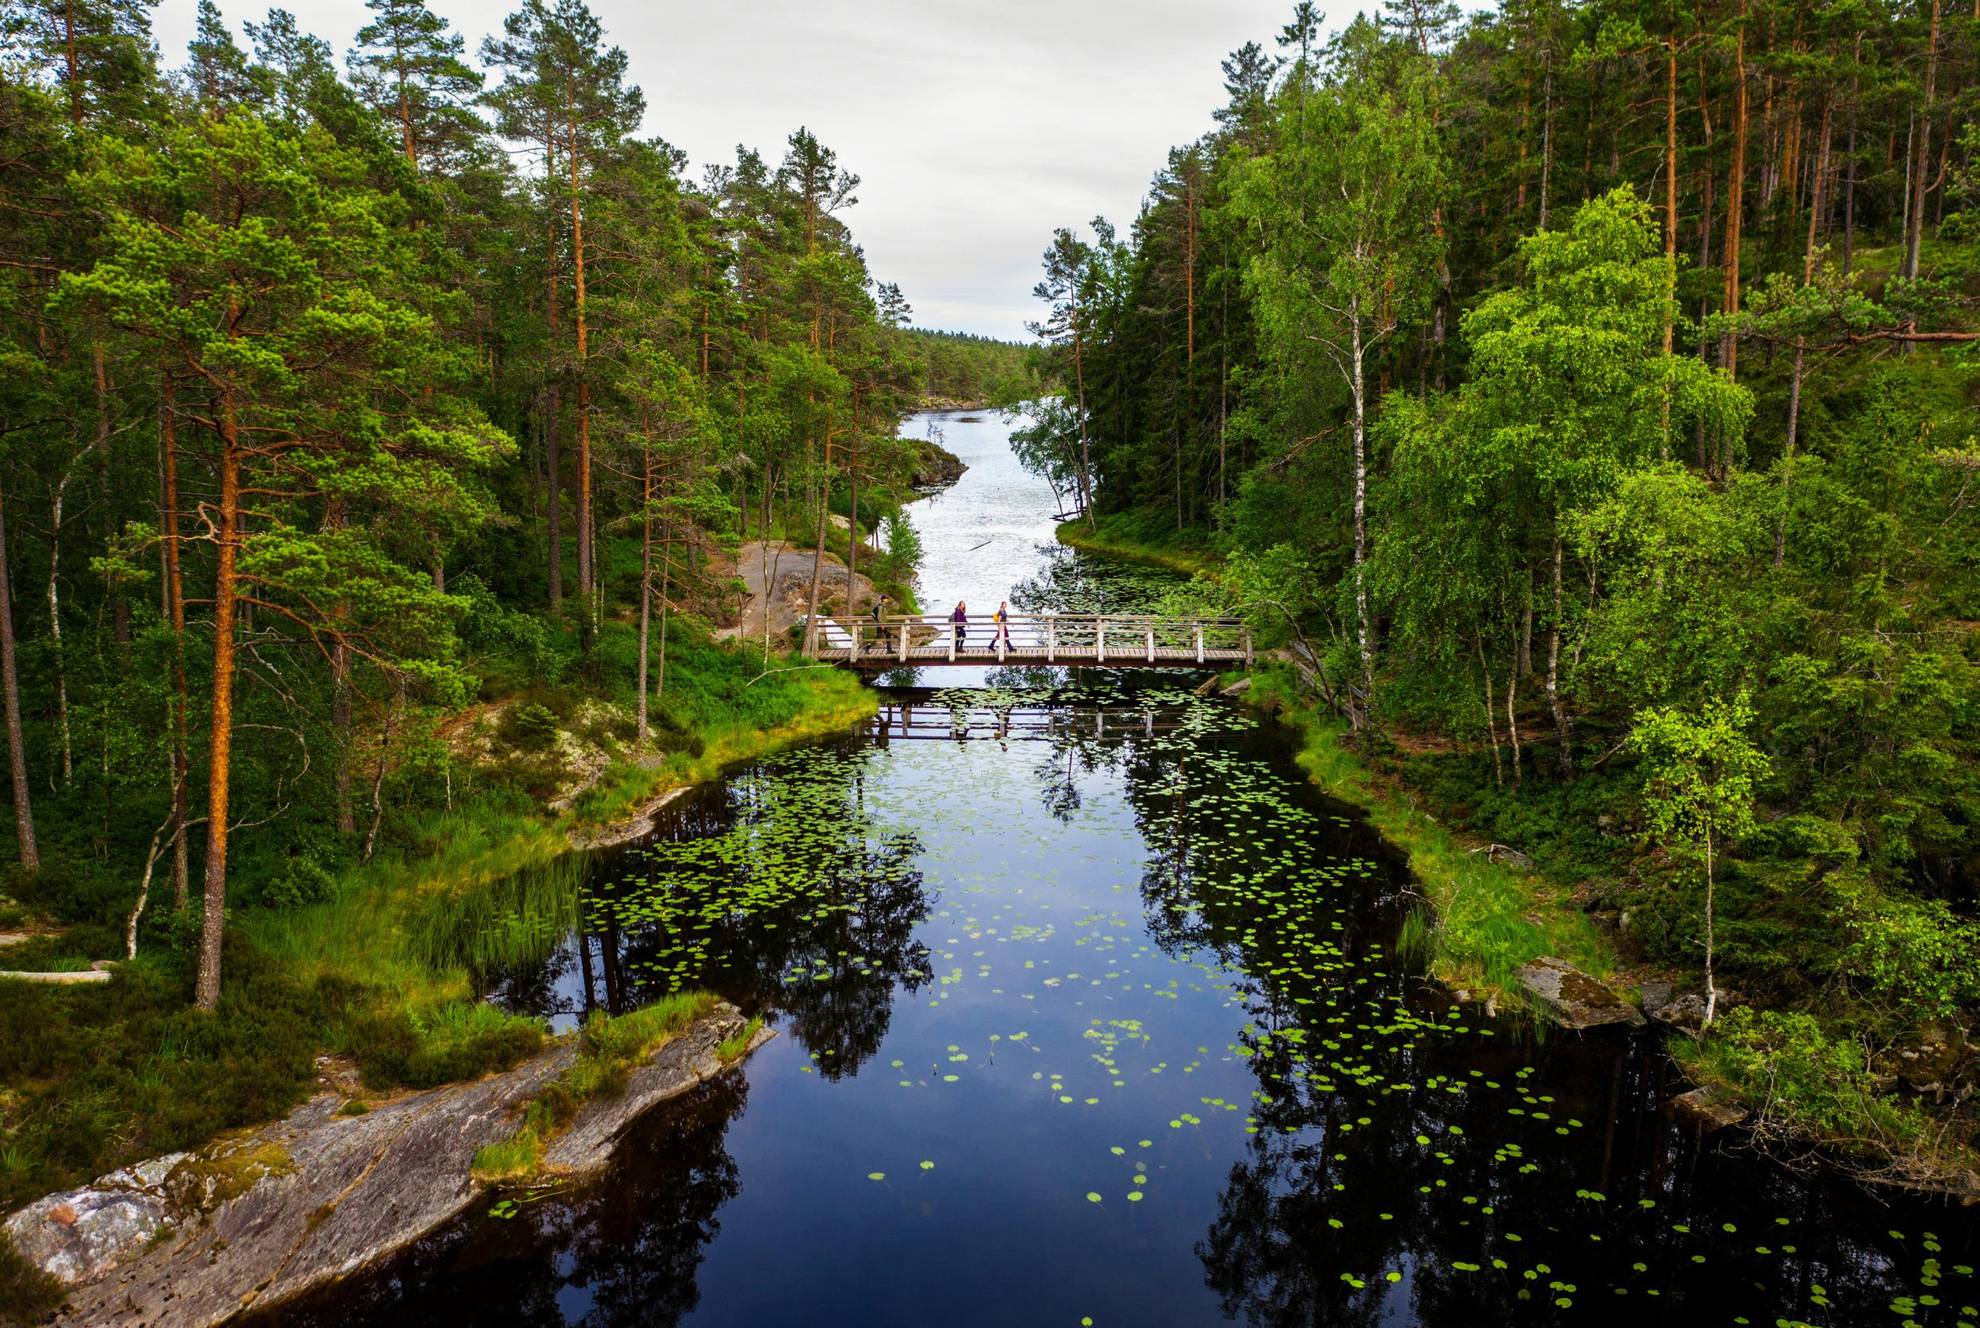 Drie mensen lopen op een kleine houten brug over een meer. Aan weerszijden van de brug zijn bossen.